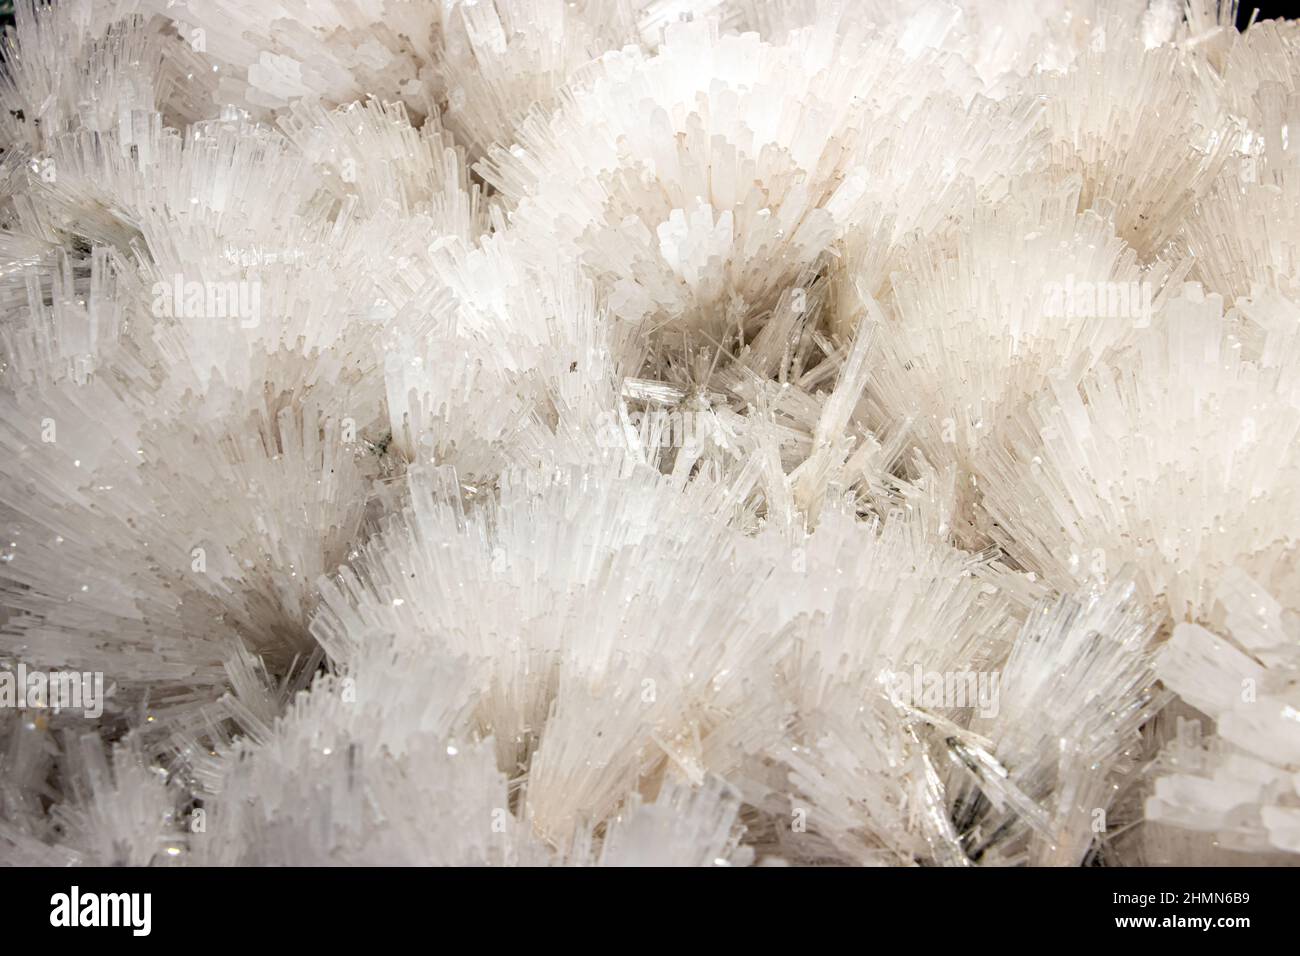 Ein natürlicher Mineralstein - roher Scolecit, ein Tektosilikat-Mineral der Zeolith-Gruppe, ein hydratisiertes Calciumsilikat. Stockfoto